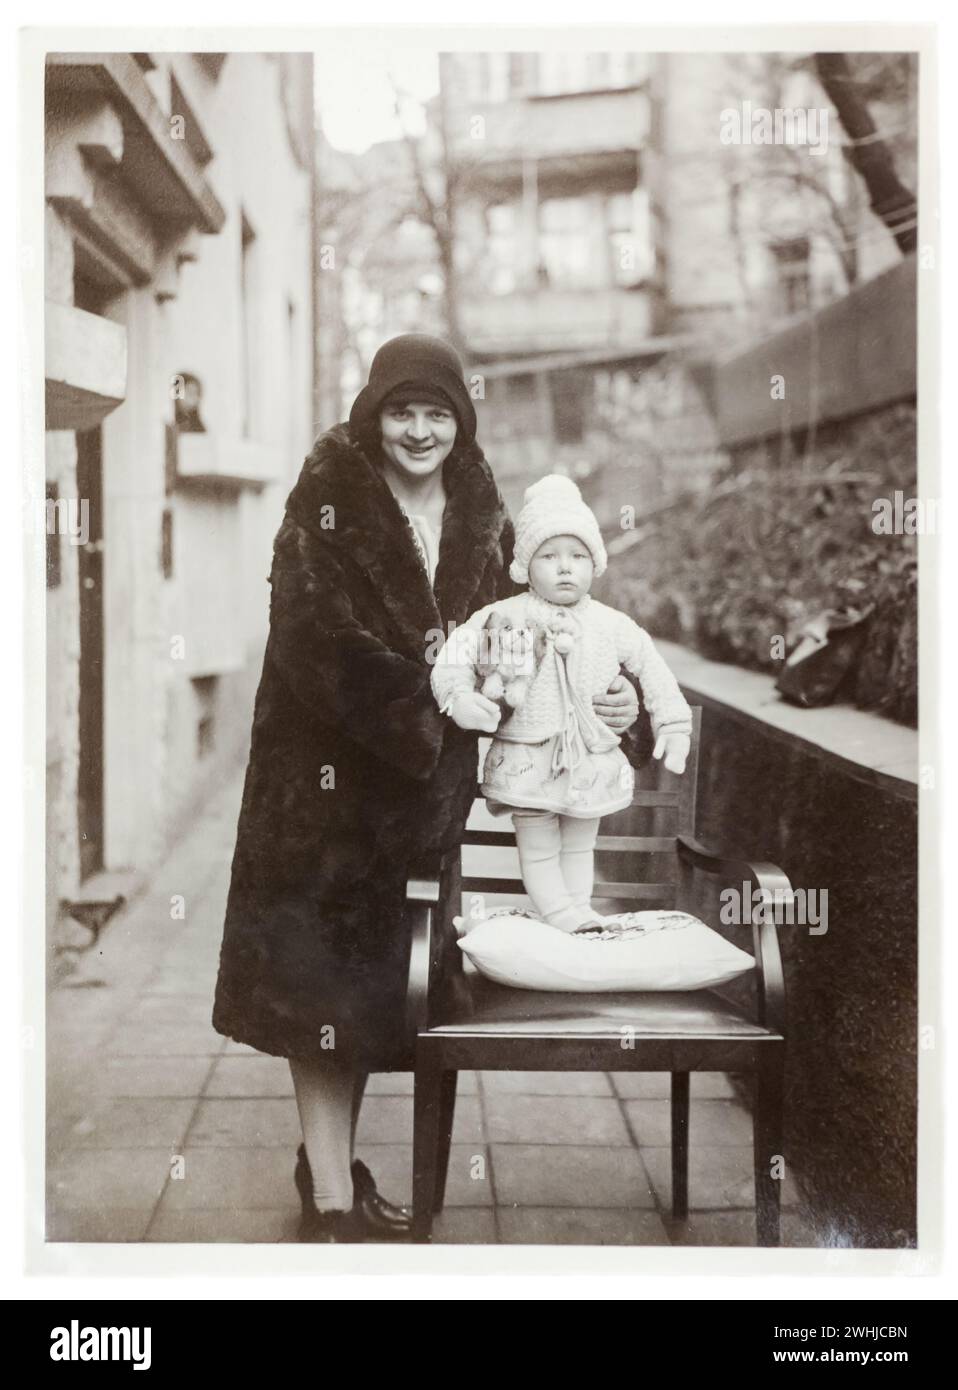 Circa 1920, Allemagne. Portrait de jeune mère avec son enfant, à l'extérieur. Femme avec manteau de fourrure, vêtements Banque D'Images